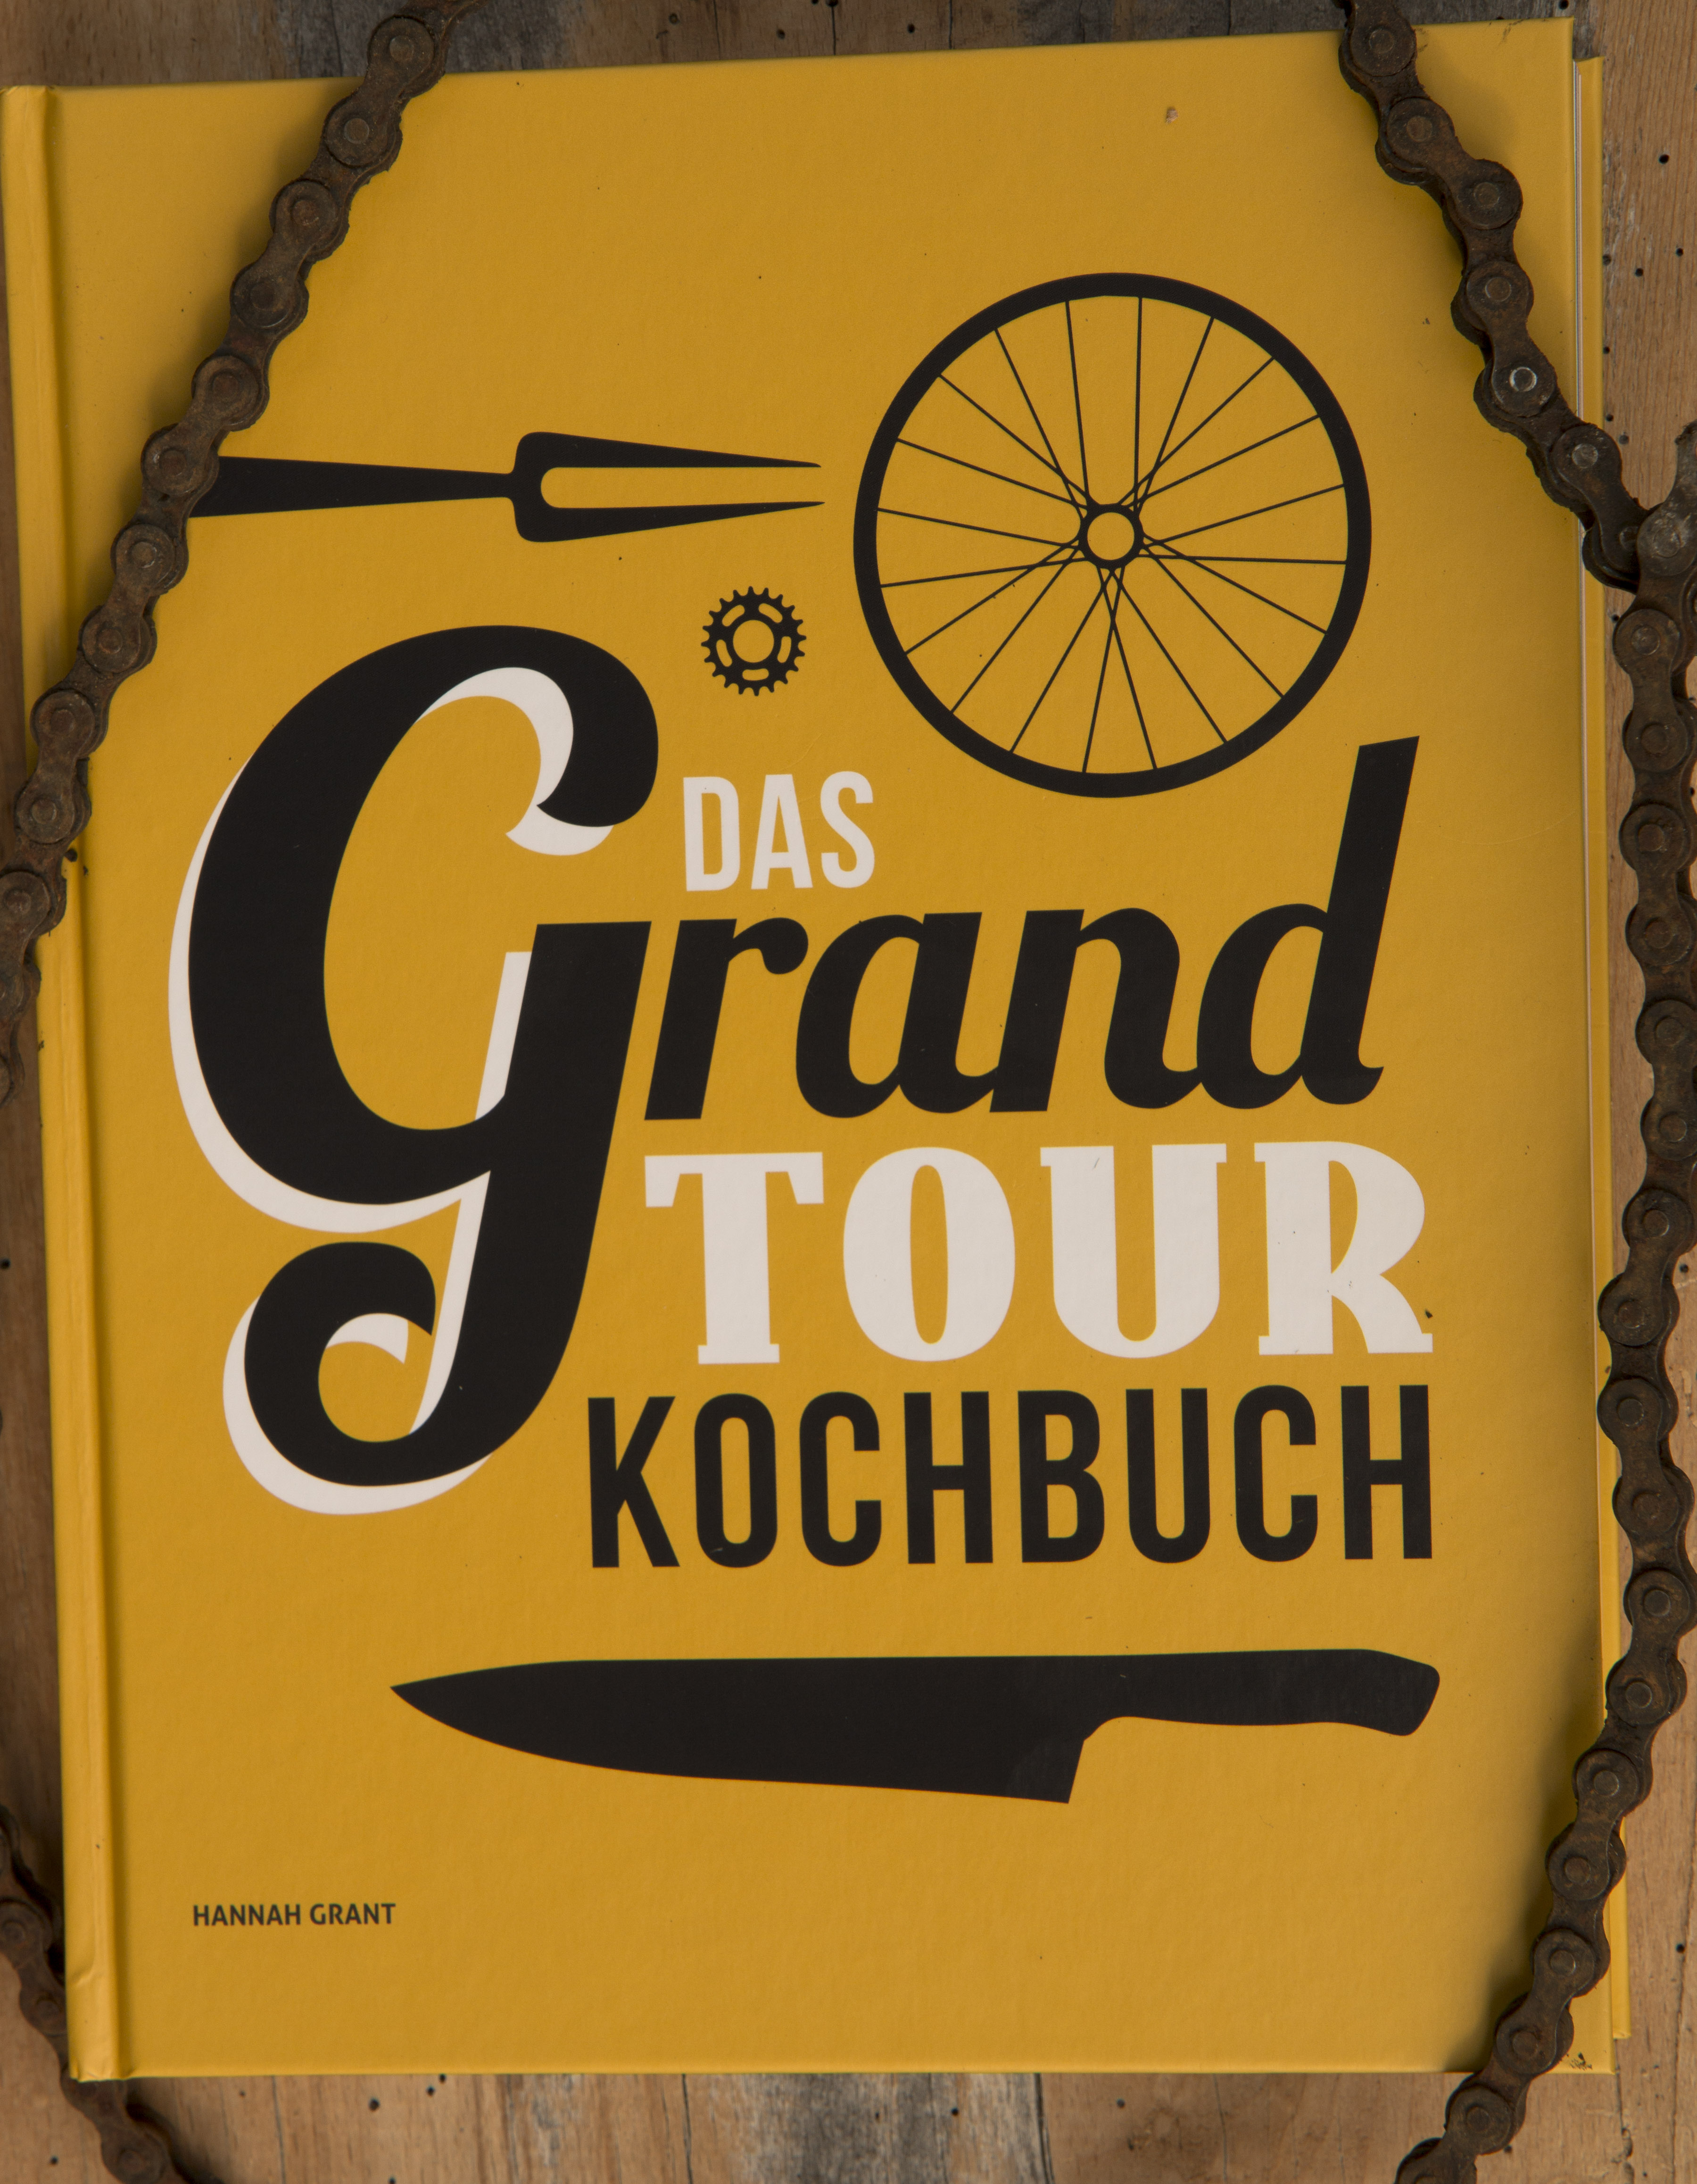 [LesestoffT Tour de France: besser essen mit dem Grand Tour Kochbuch